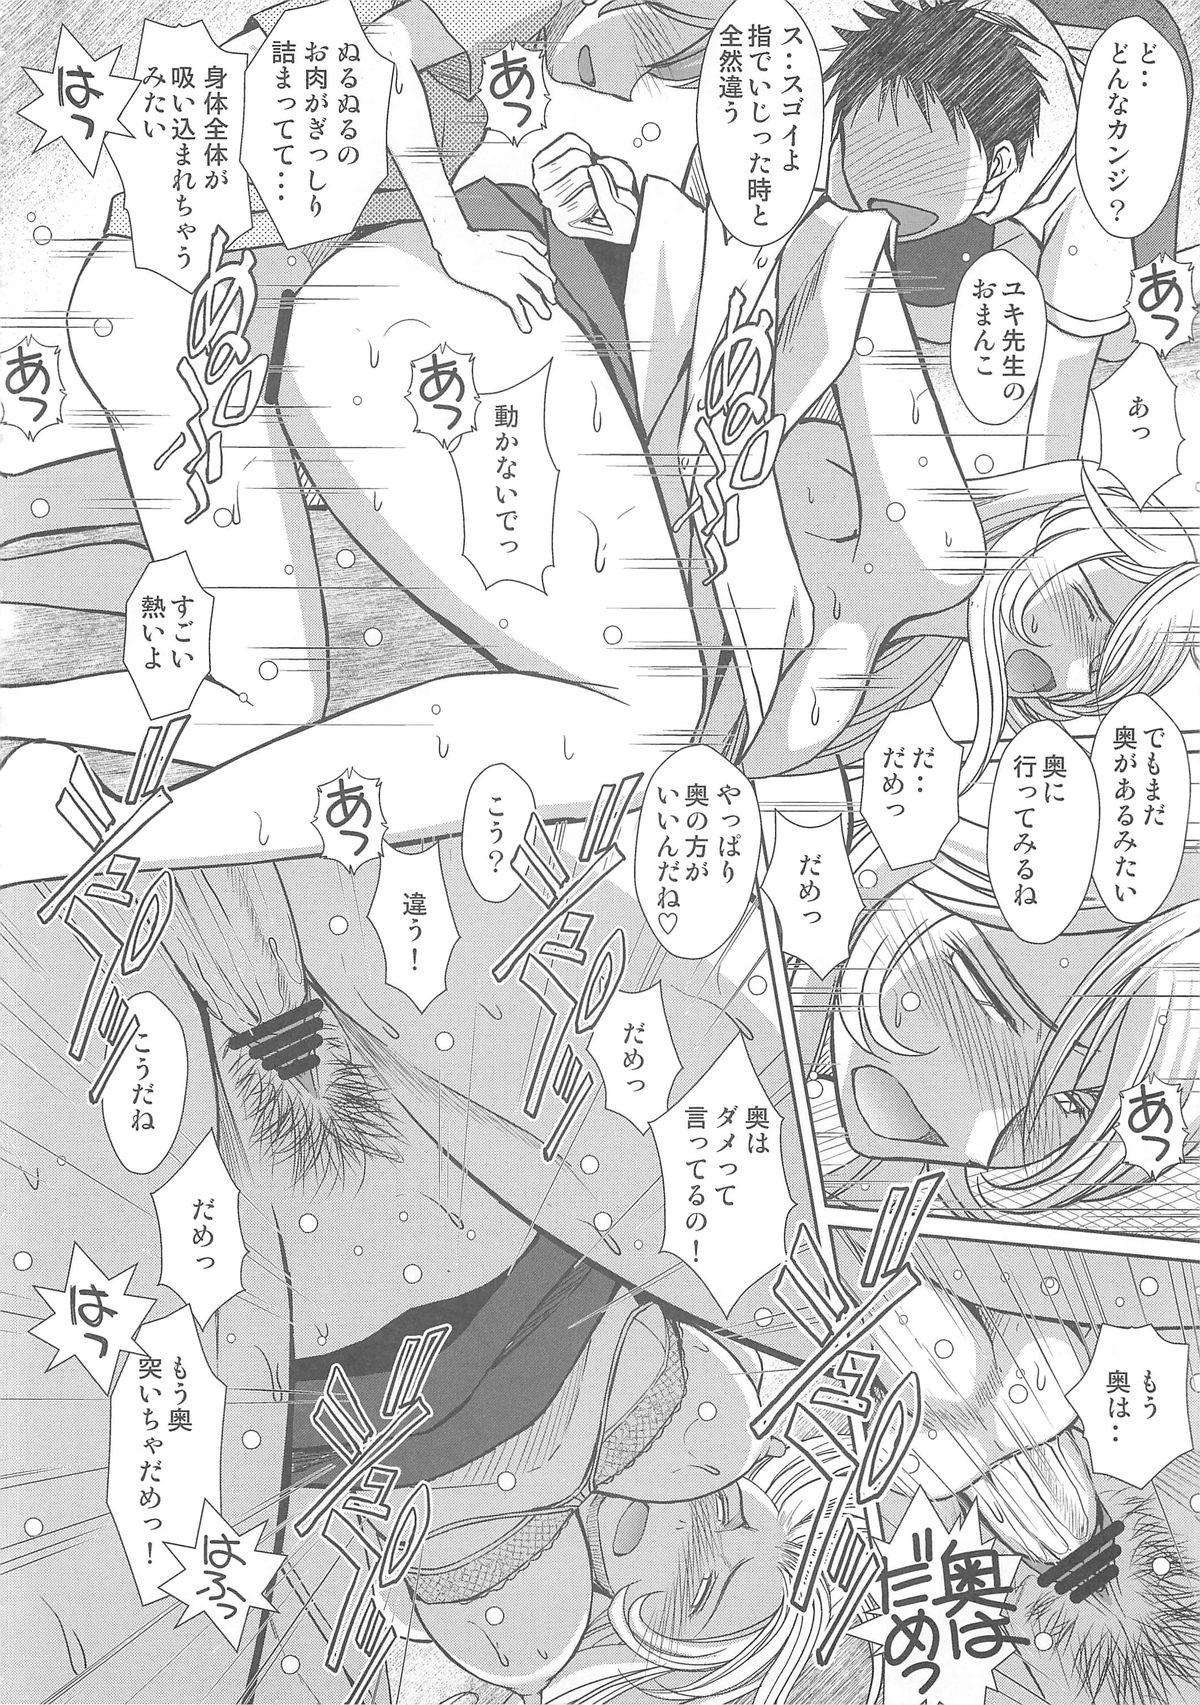 Fodendo 2199-nen no Mori Yuki - Space battleship yamato Throat - Page 11